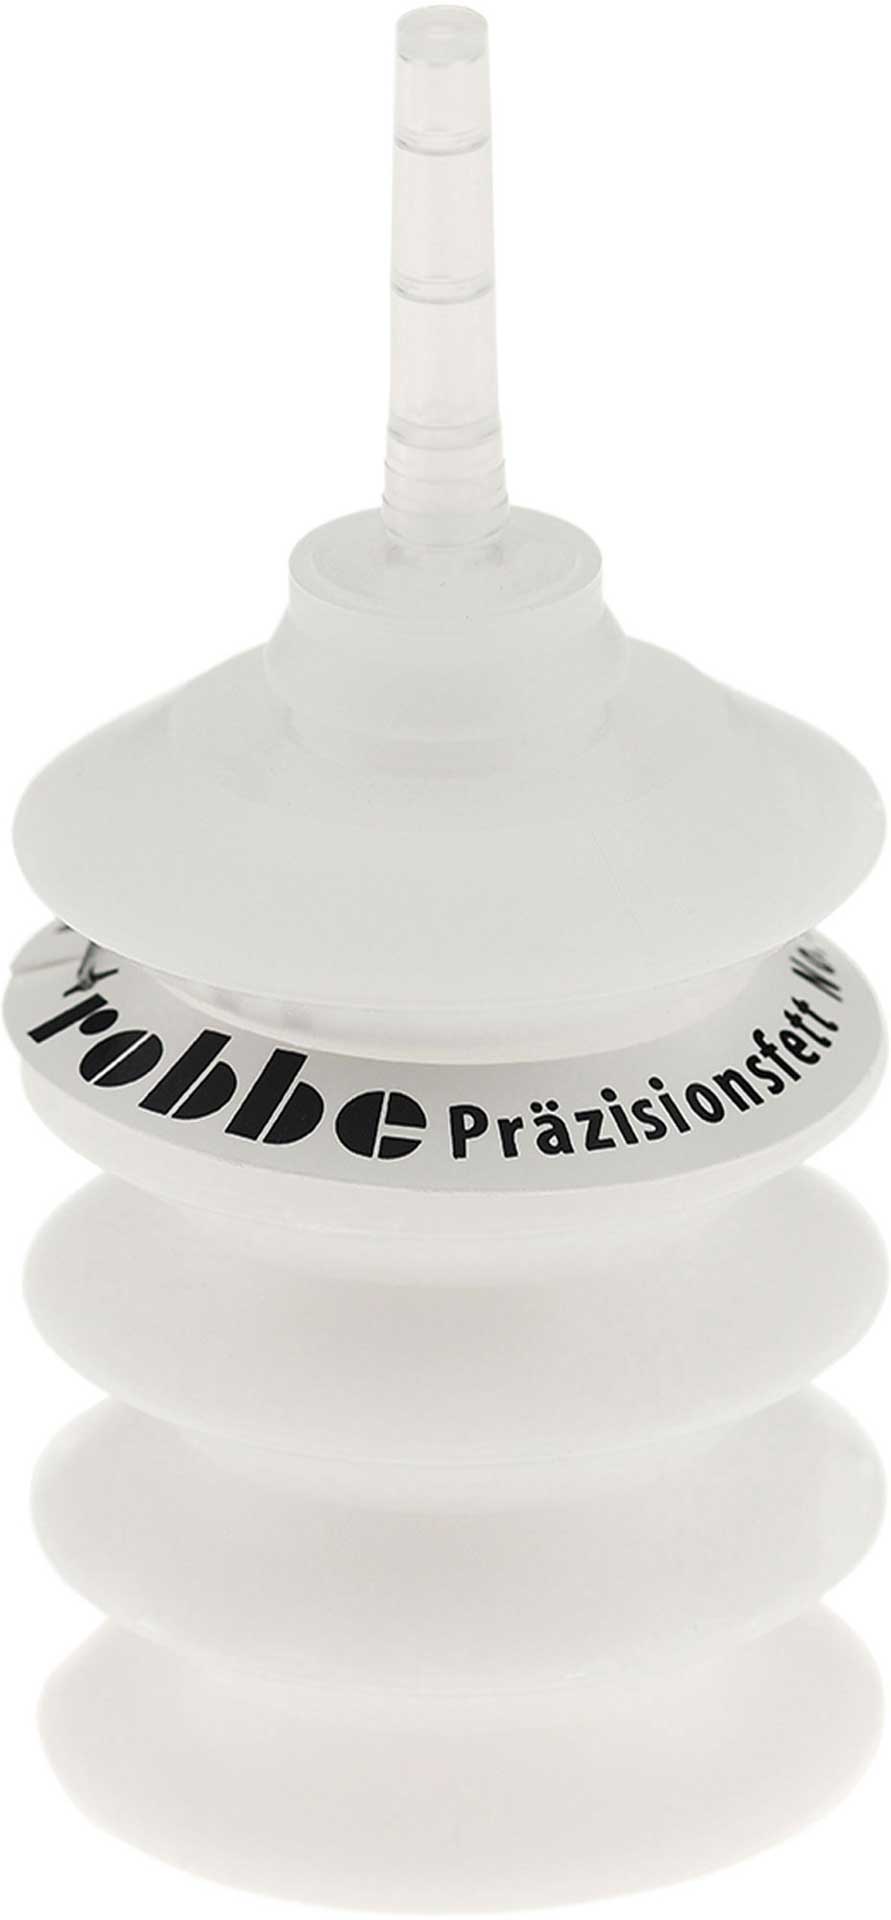 Robbe Modellsport Teflonfett 25g ( Präzisionsfett ) Original - Produkt!